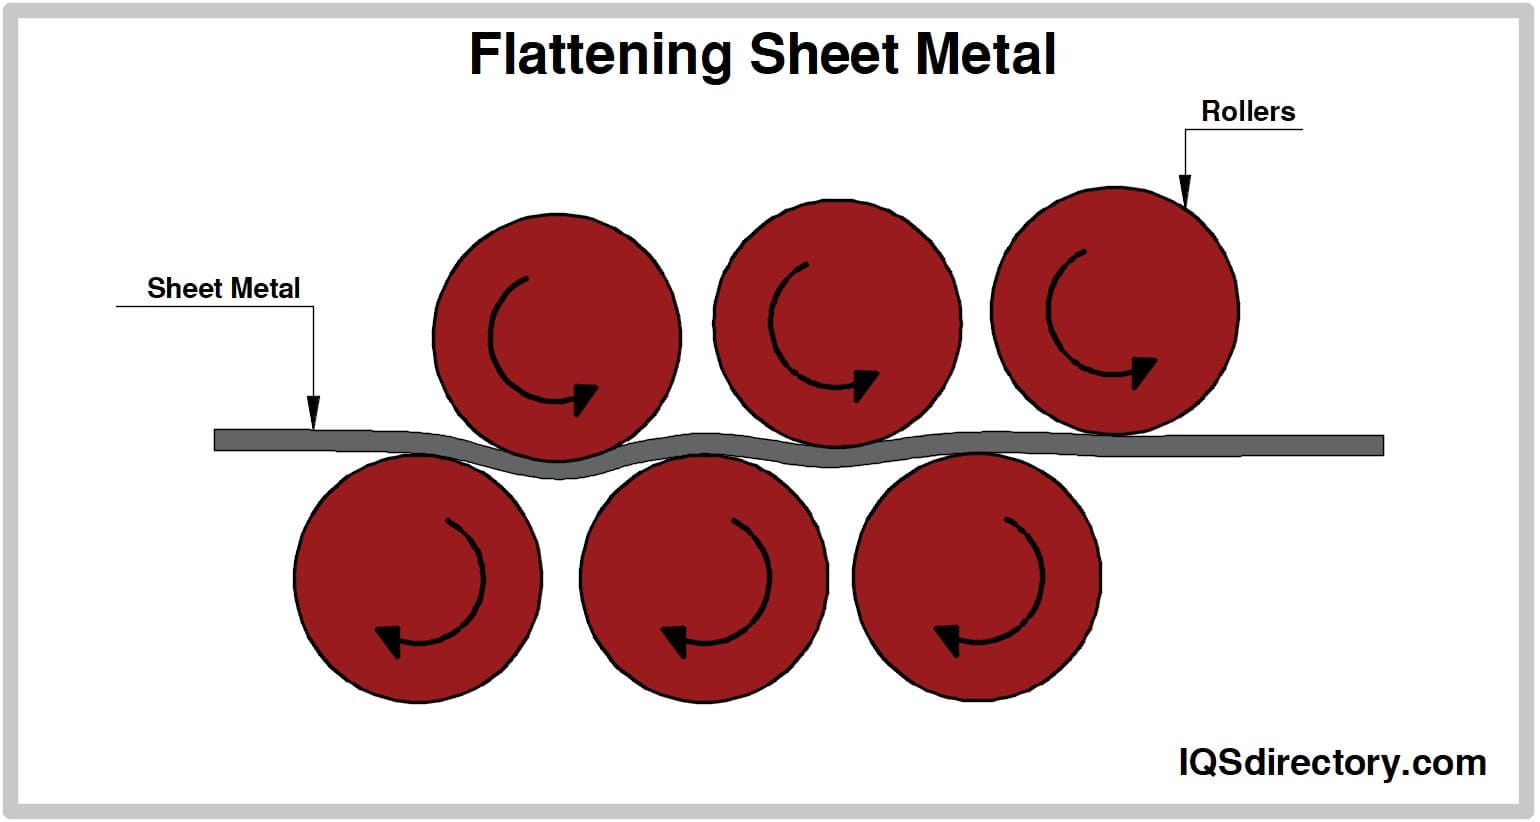 Flattening Sheet Metal